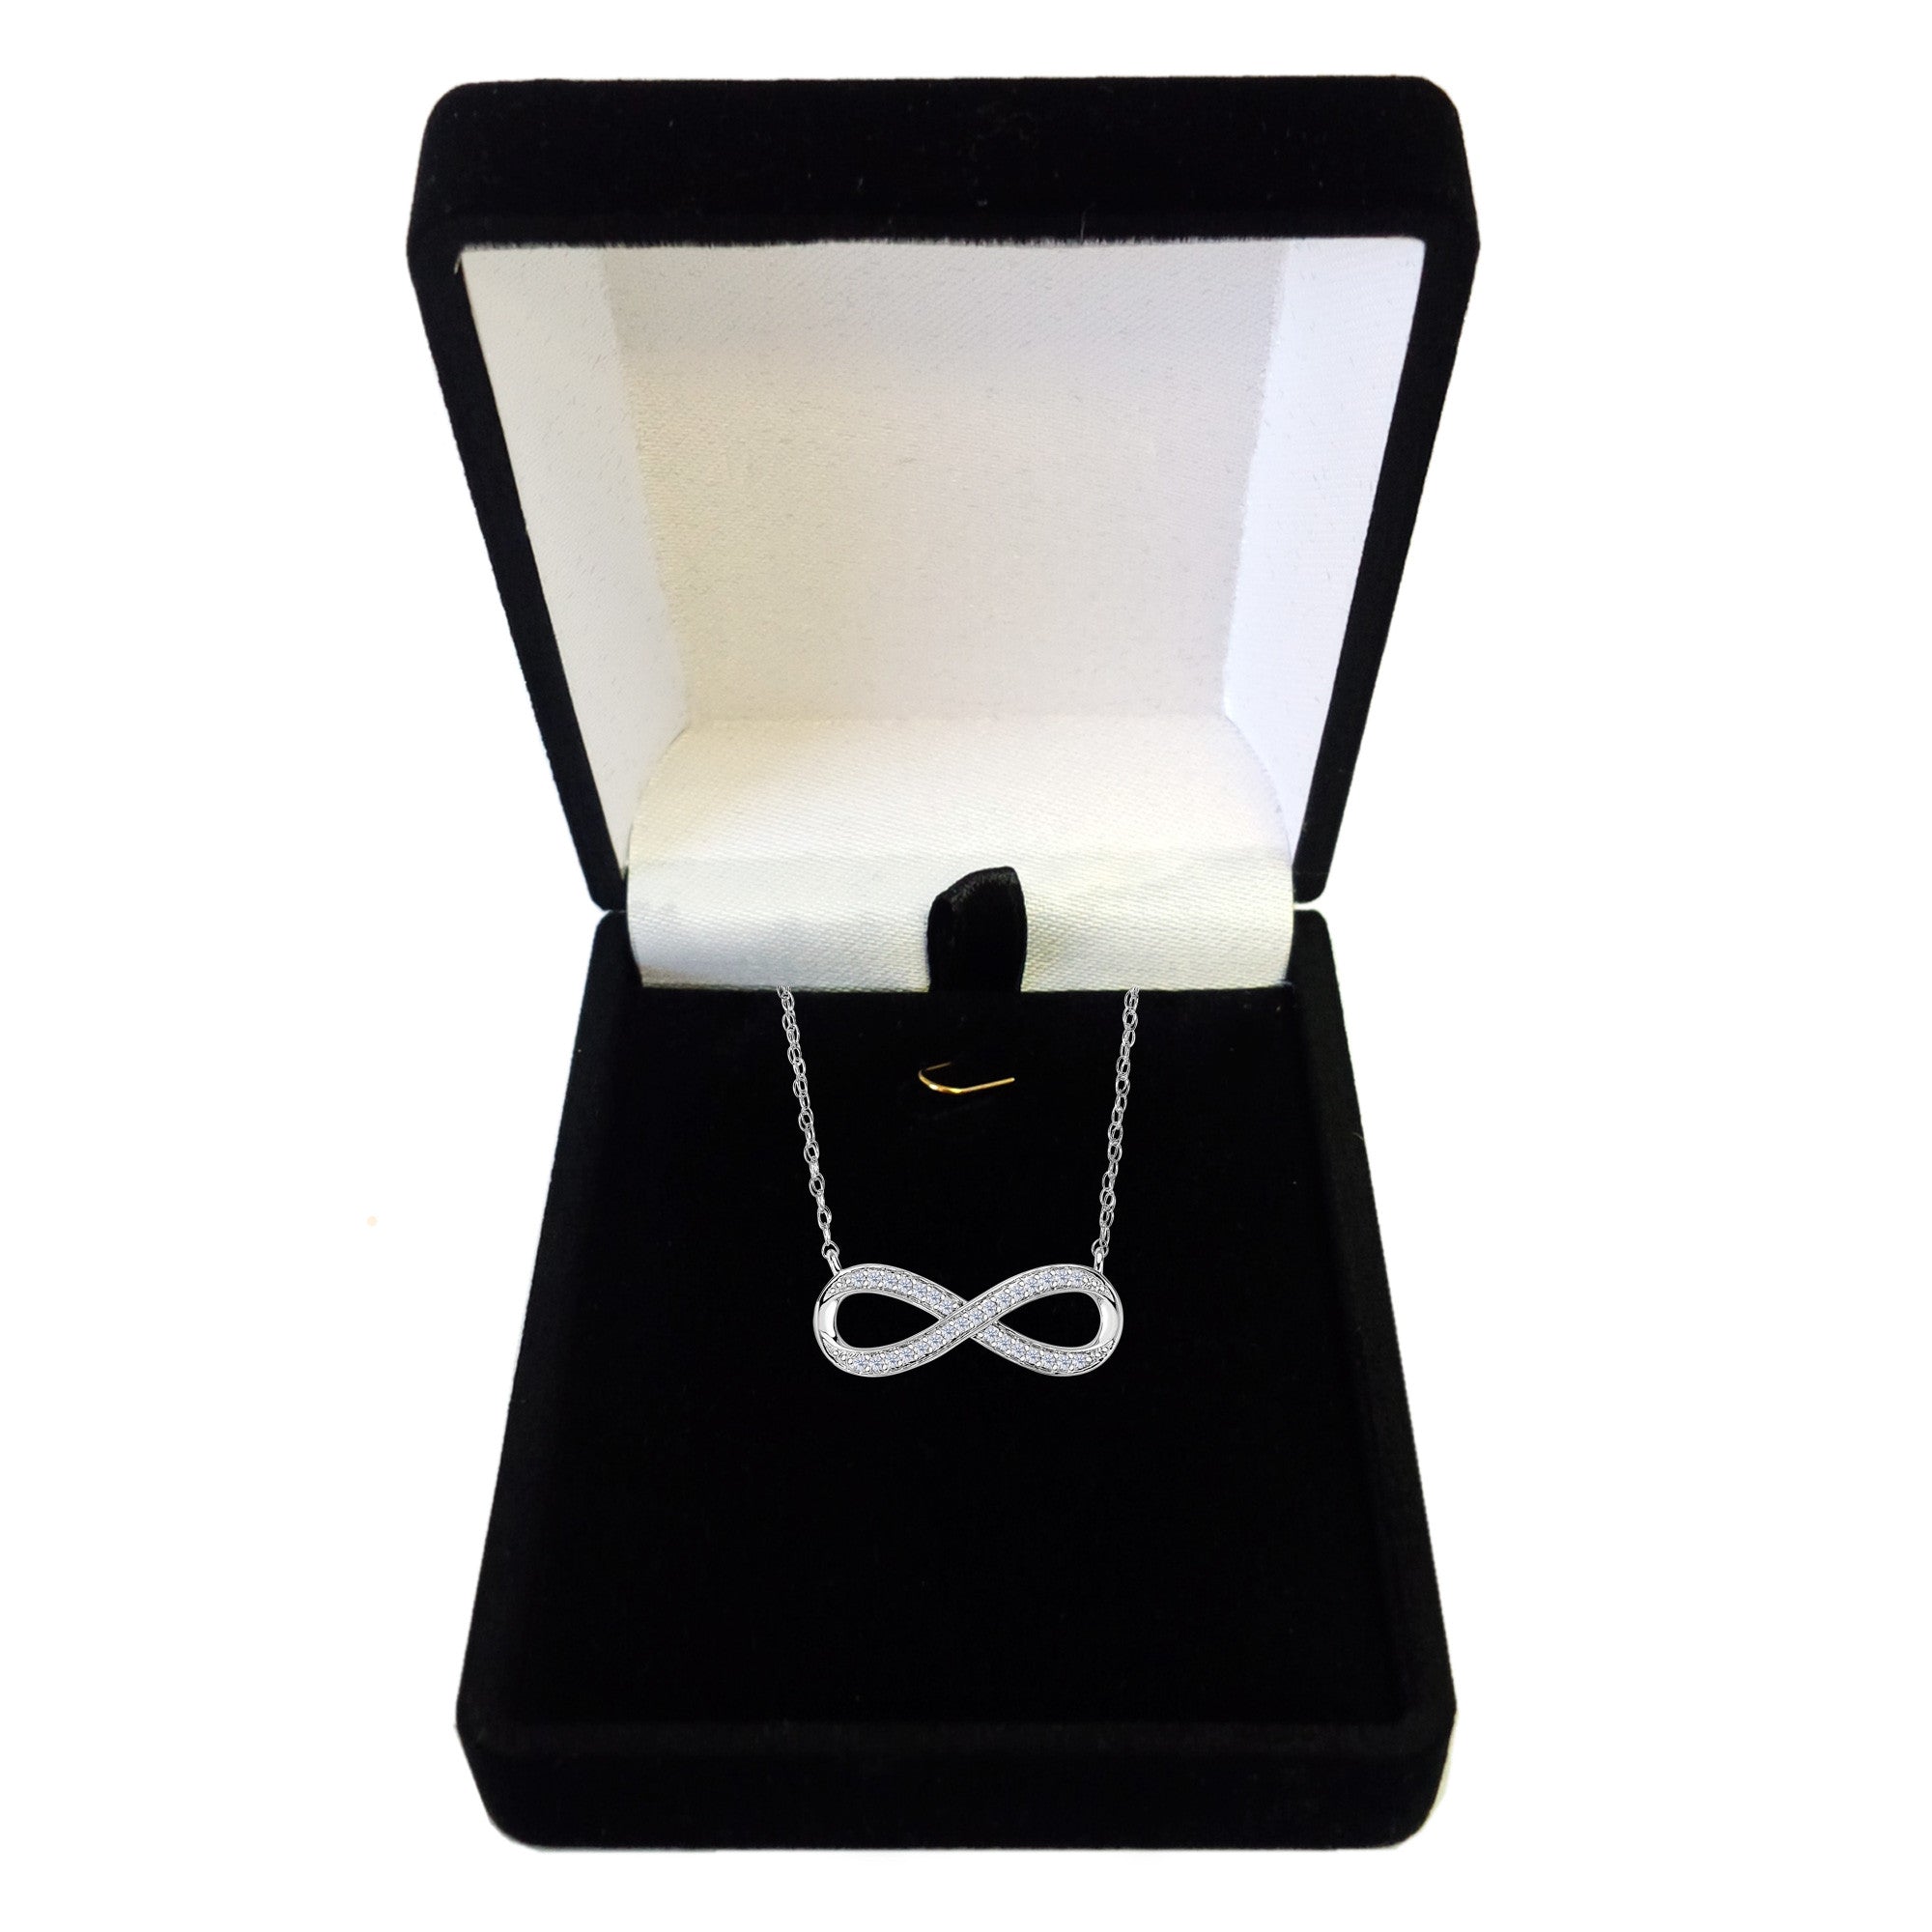 14K hvidguld med 0,10 Ct diamanter Infinity halskæde - 18 tommer fine designer smykker til mænd og kvinder